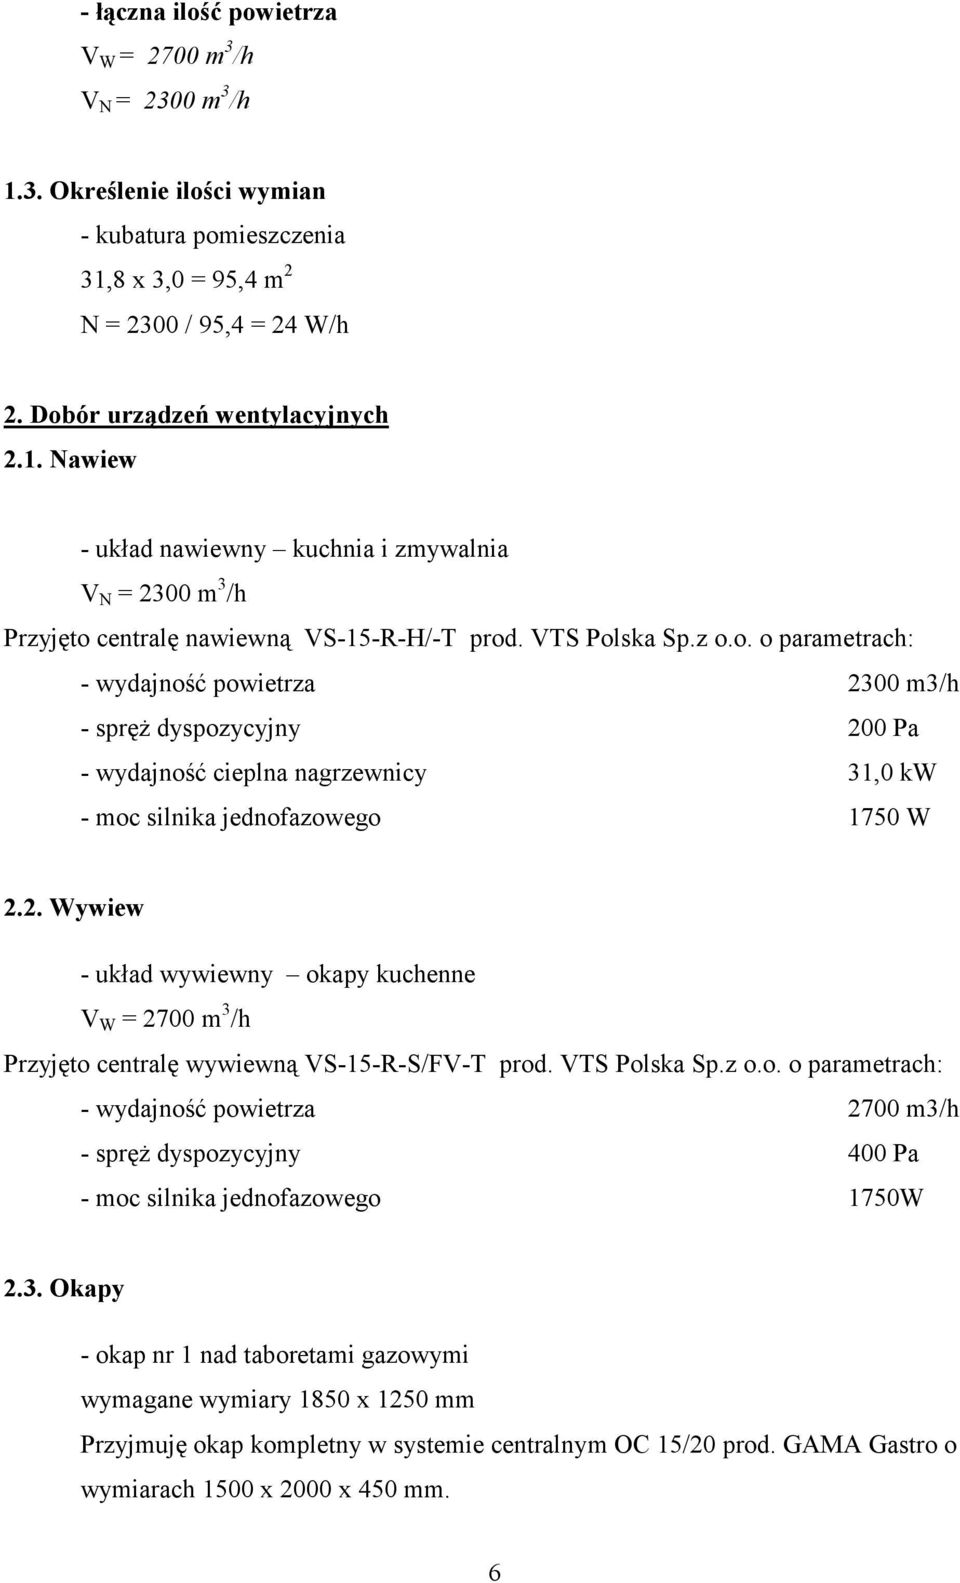 VTS Polska Sp.z o.o. o parametrach: - wydajność powietrza 2700 m3/